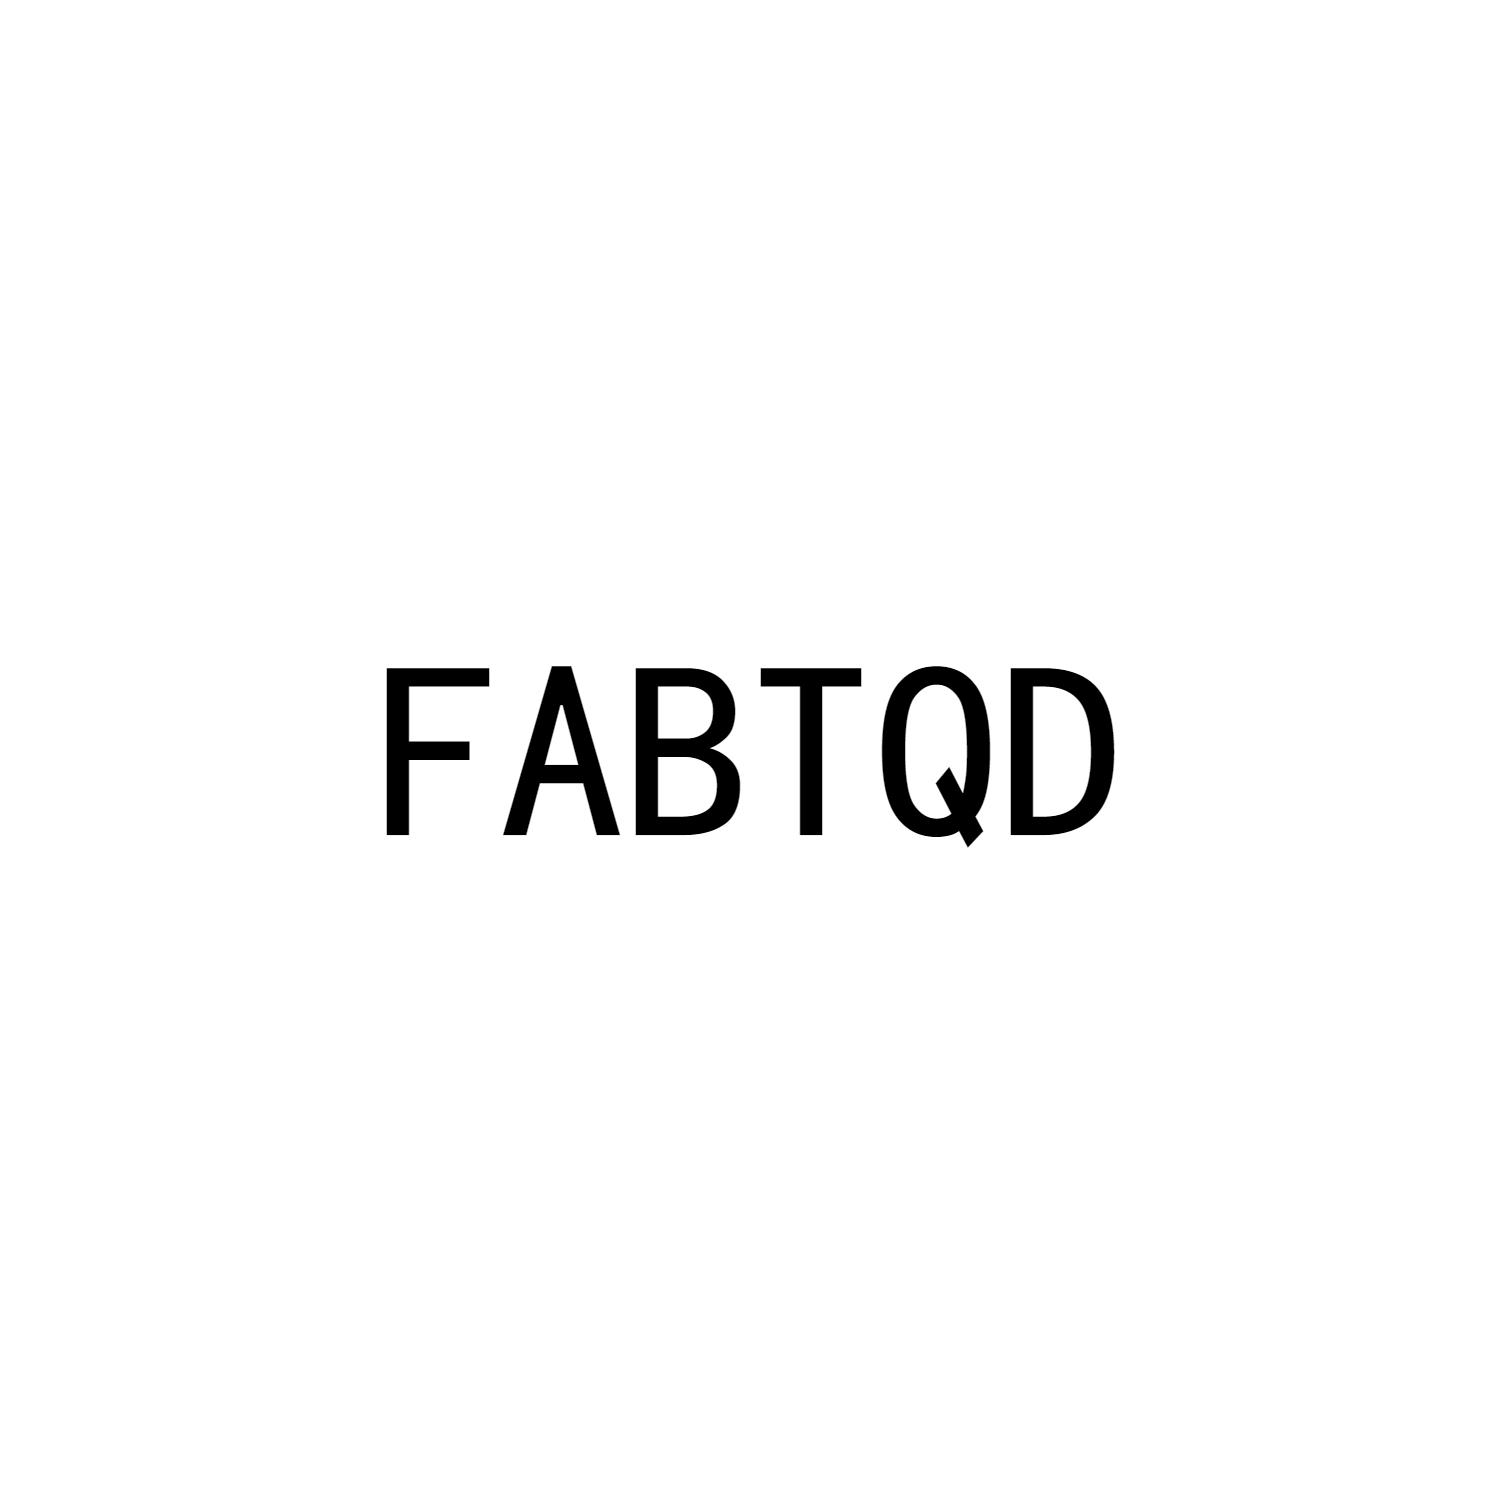 FABTQD